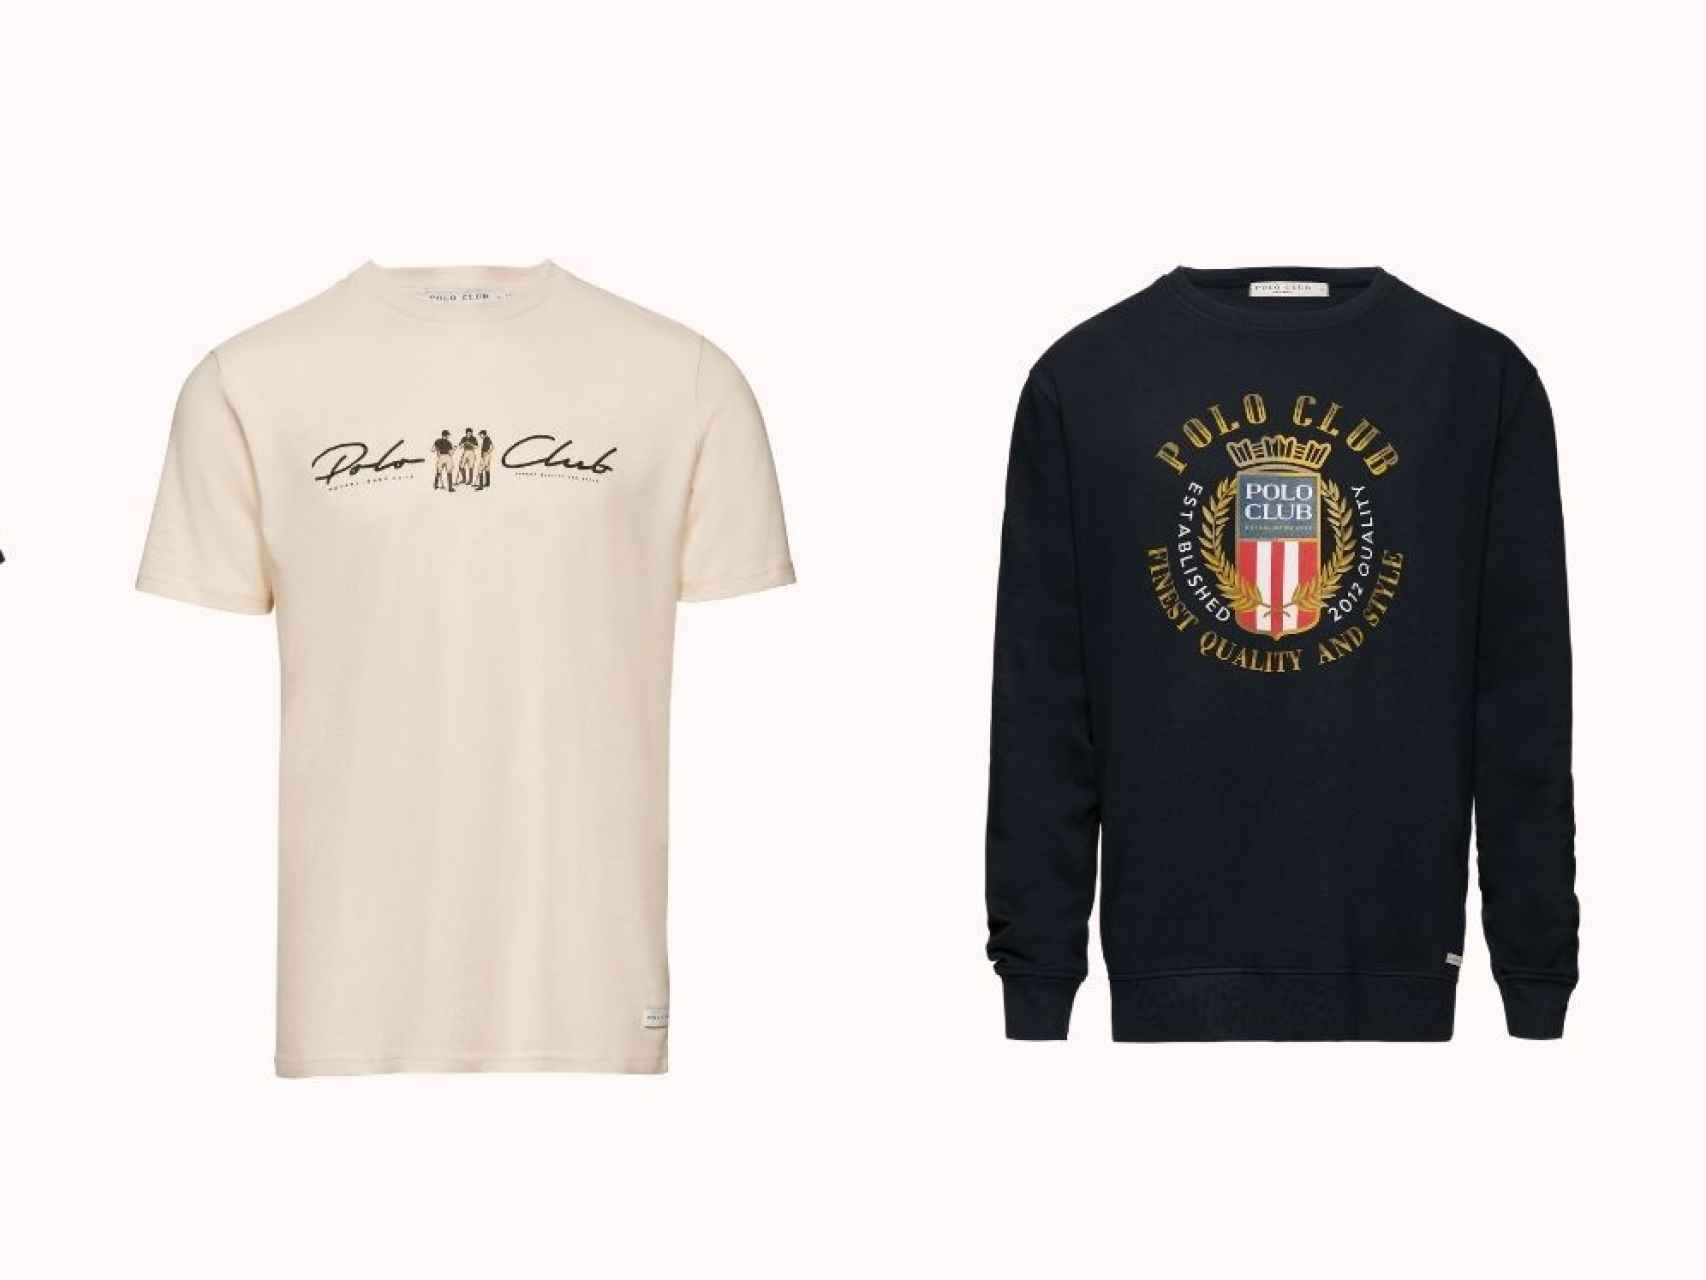 Camisetas de Polo Club. Camiseta manga corta en color beige -izquierda- (29,99 euros) y Sudadera orgánica en color azul marino (33,99 euros).